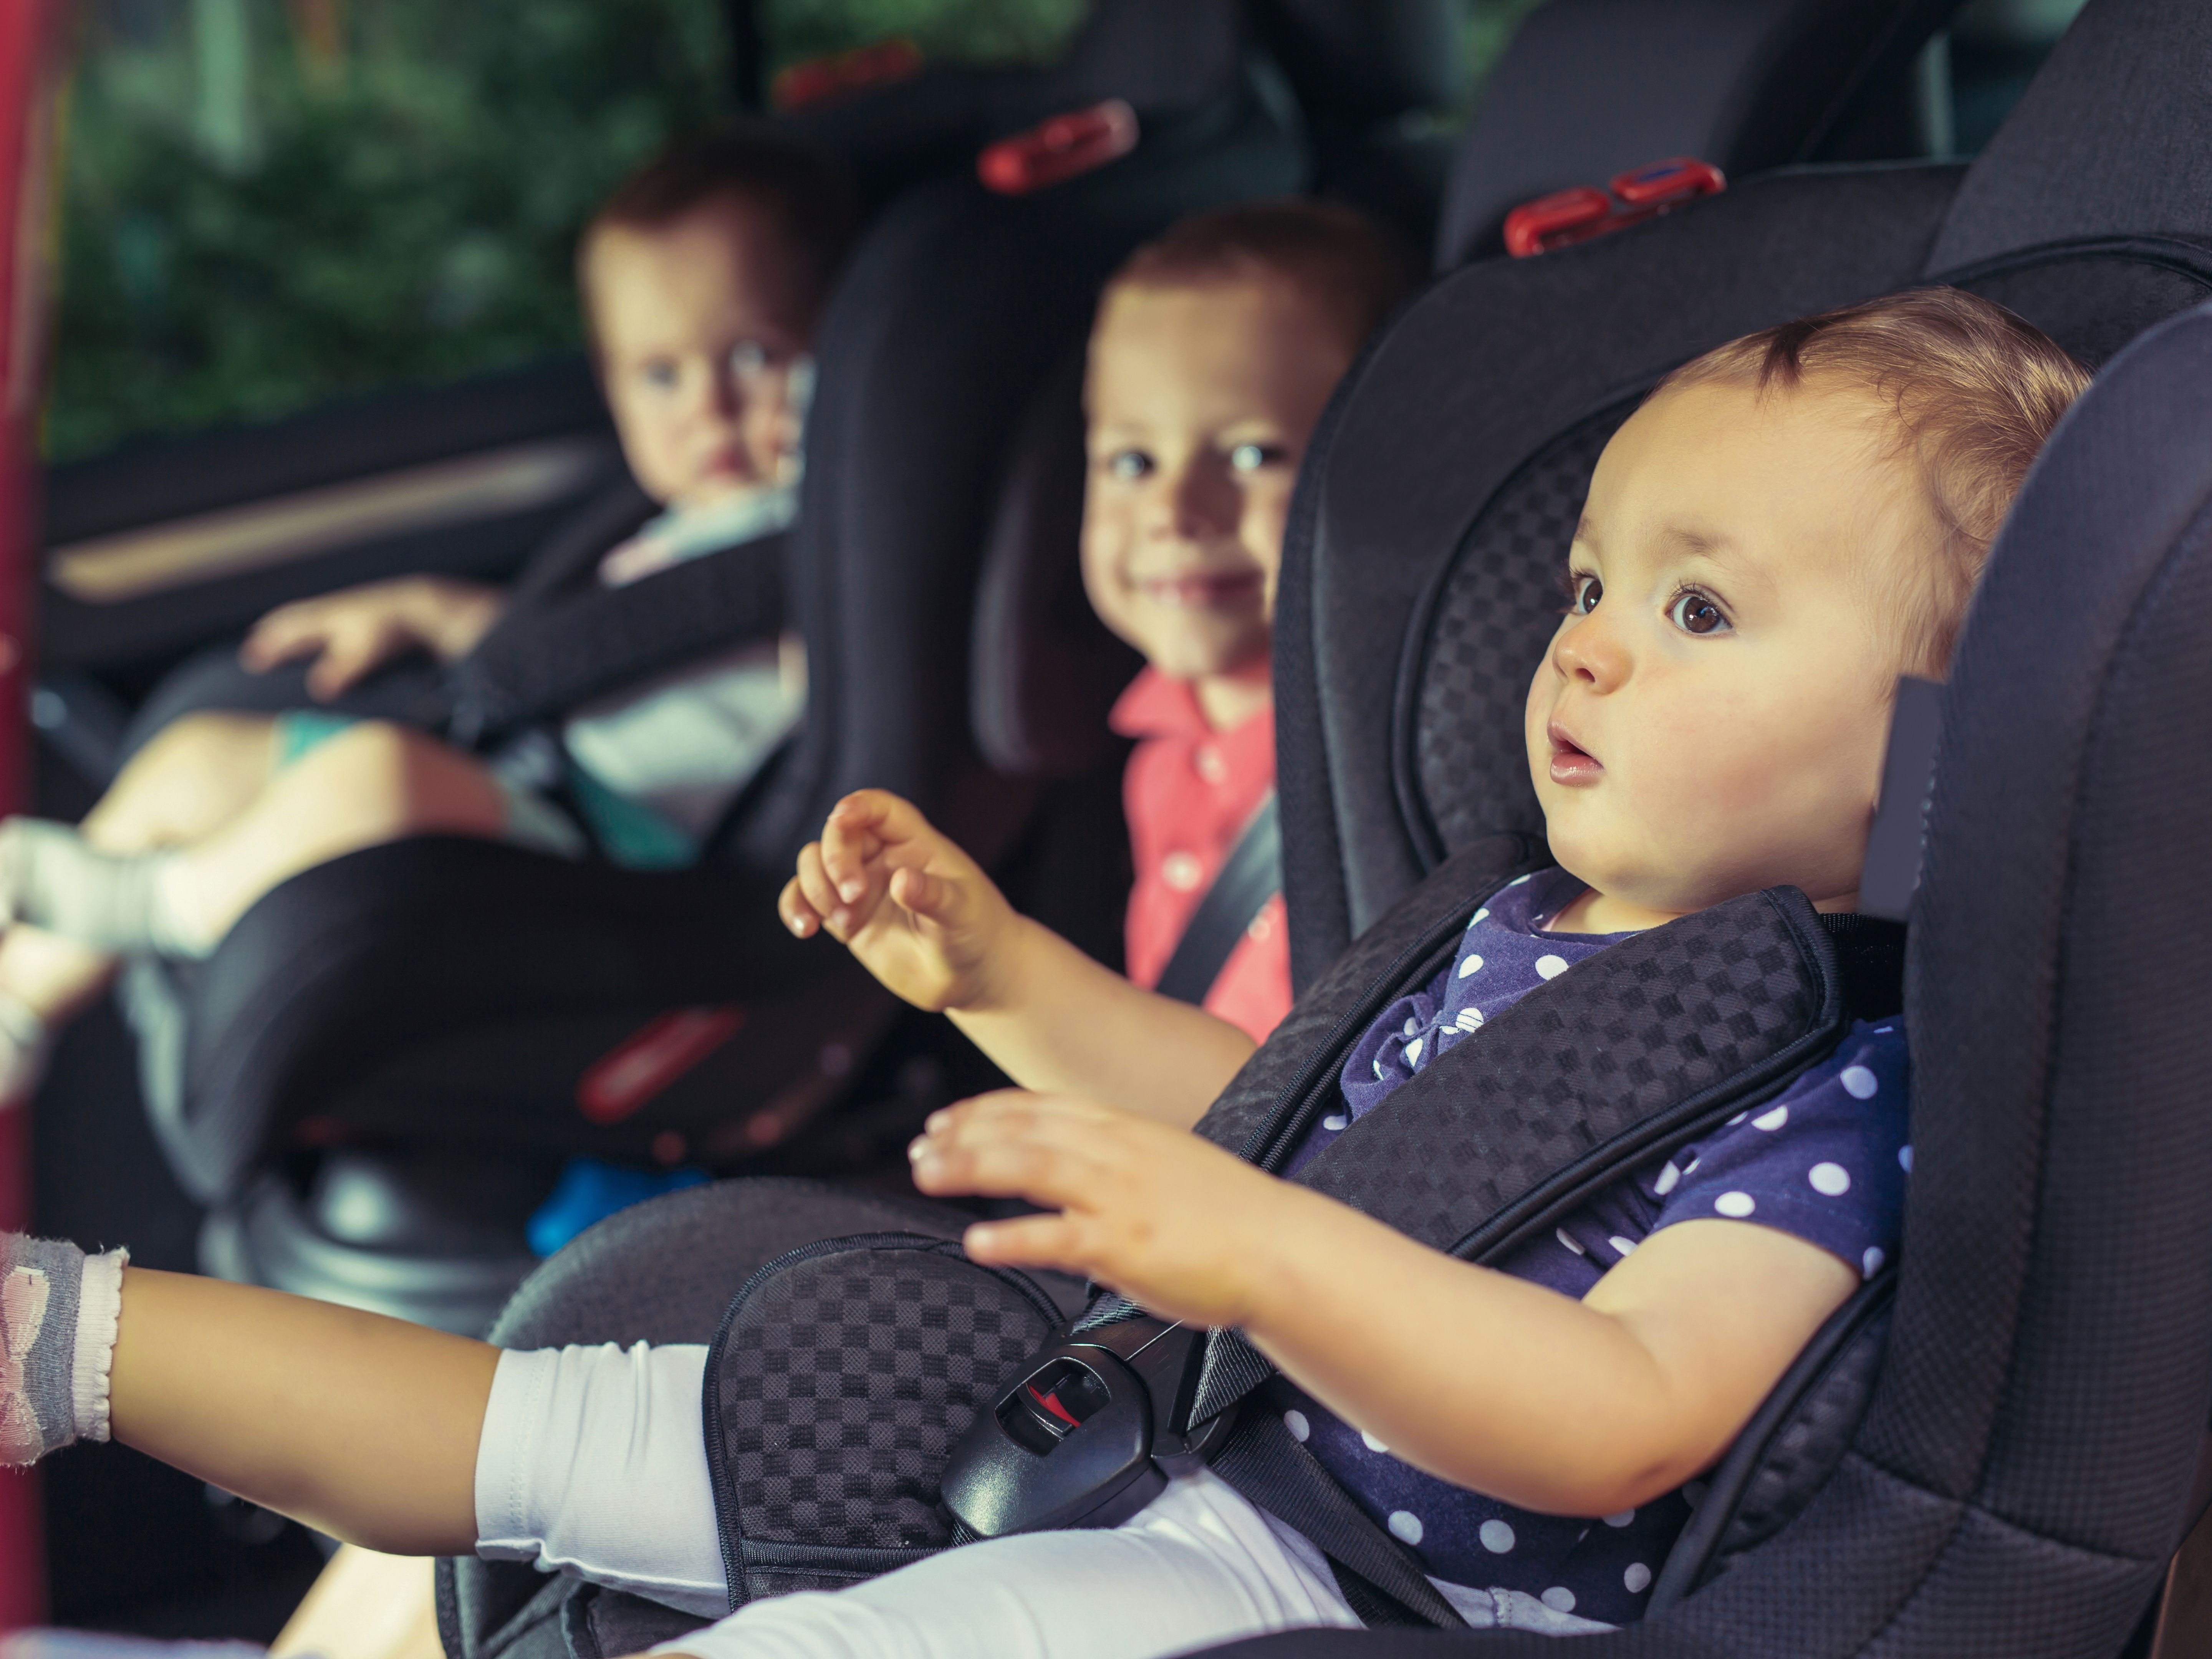 Ceinture de sécurité, siège auto enfant ou bébé : quelles sont les règles ?